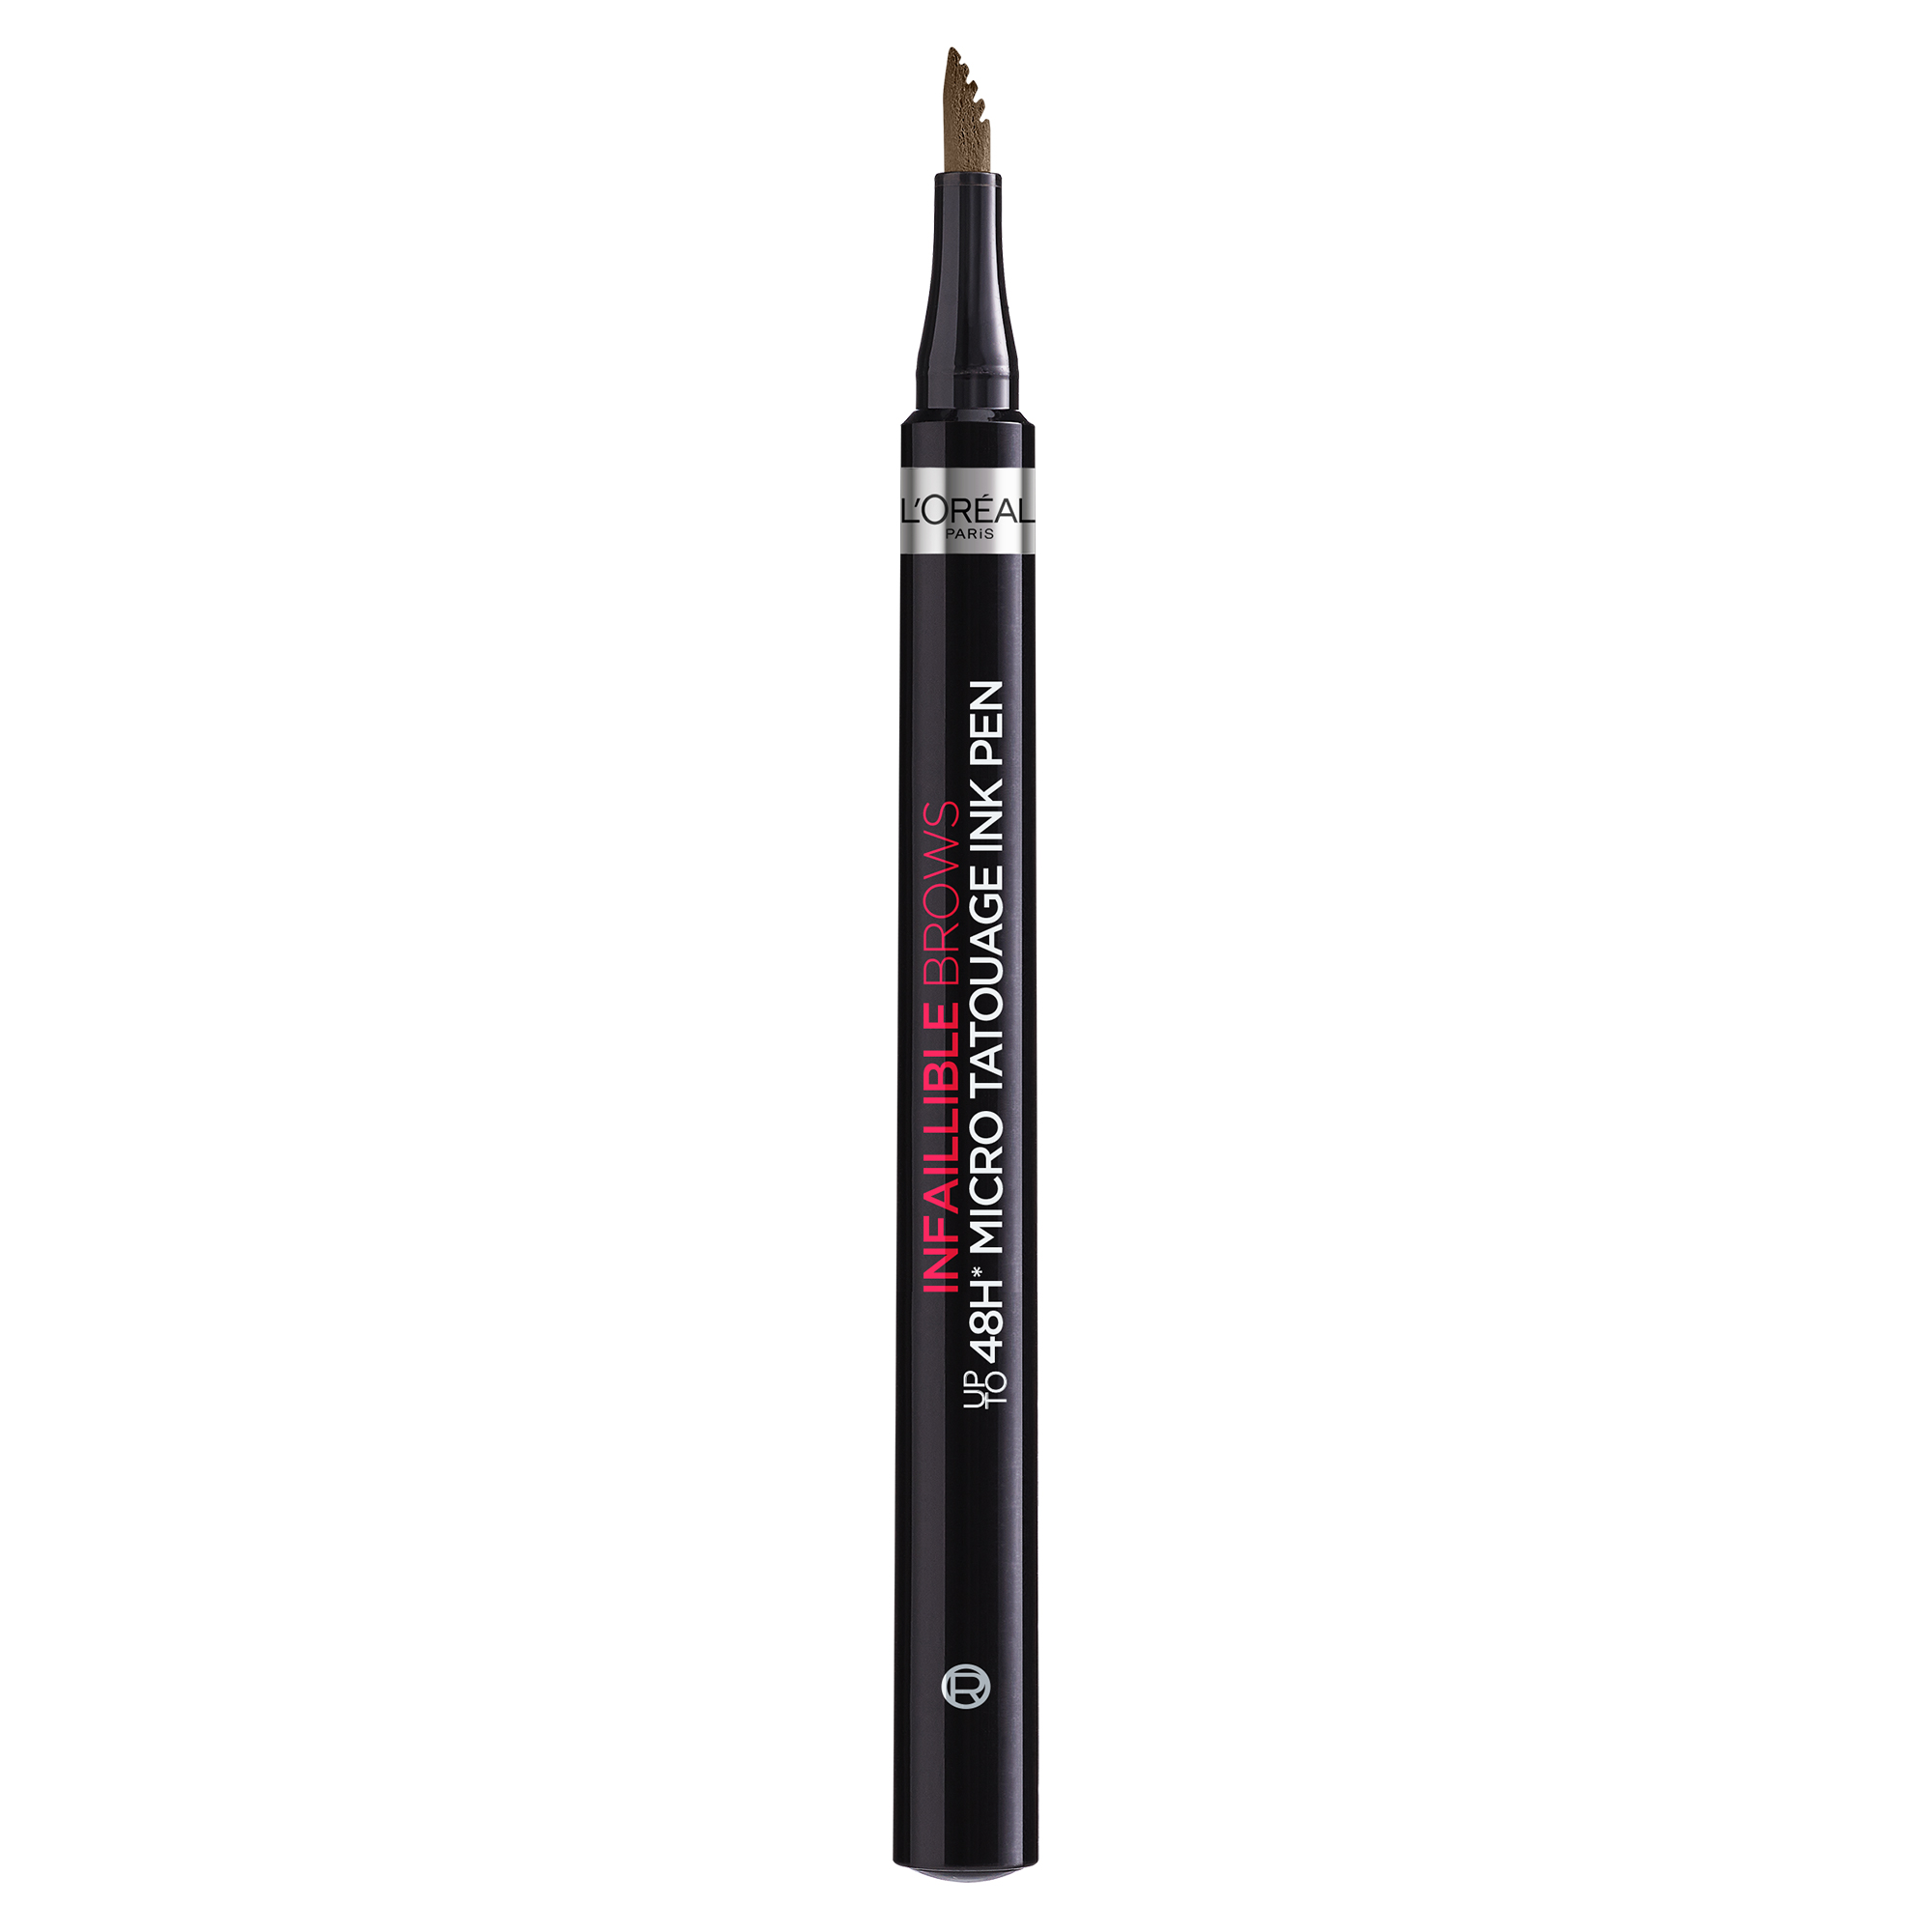 Creion pentru sprancene cu efect de micropigmentare Infaillible Brows 48H Micro Tatouage, 3.0 Brunette, 6 g, Loreal Paris